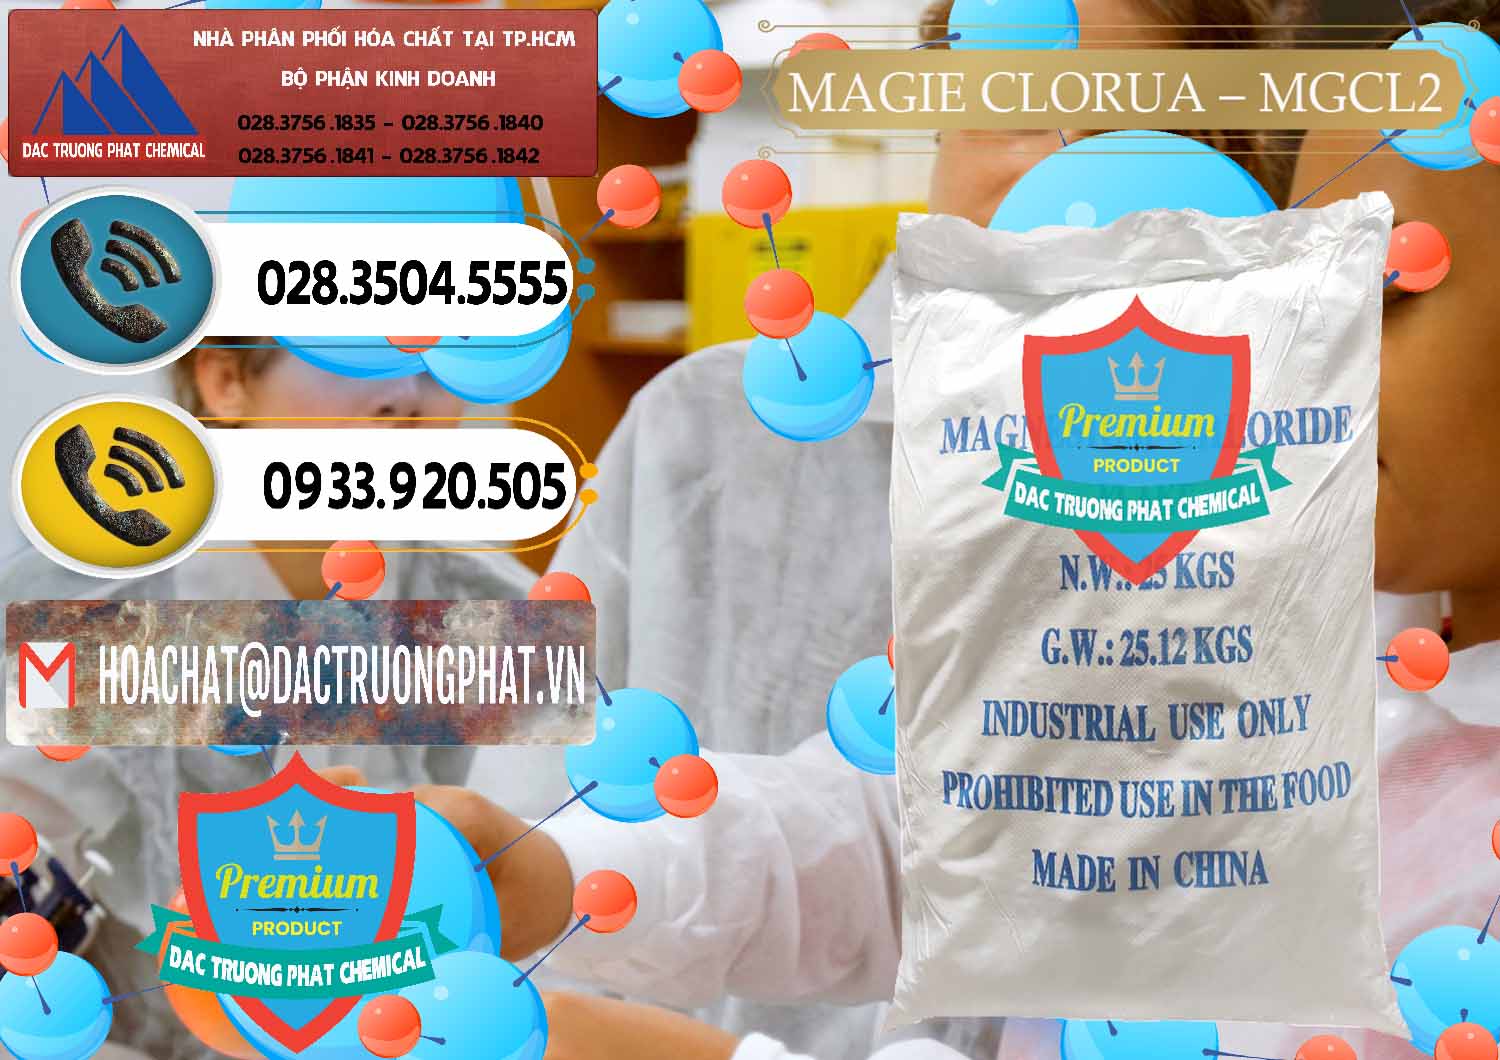 Nơi cung cấp _ bán Magie Clorua – MGCL2 96% Dạng Vảy Trung Quốc China - 0091 - Đơn vị cung cấp ( nhập khẩu ) hóa chất tại TP.HCM - hoachatdetnhuom.vn